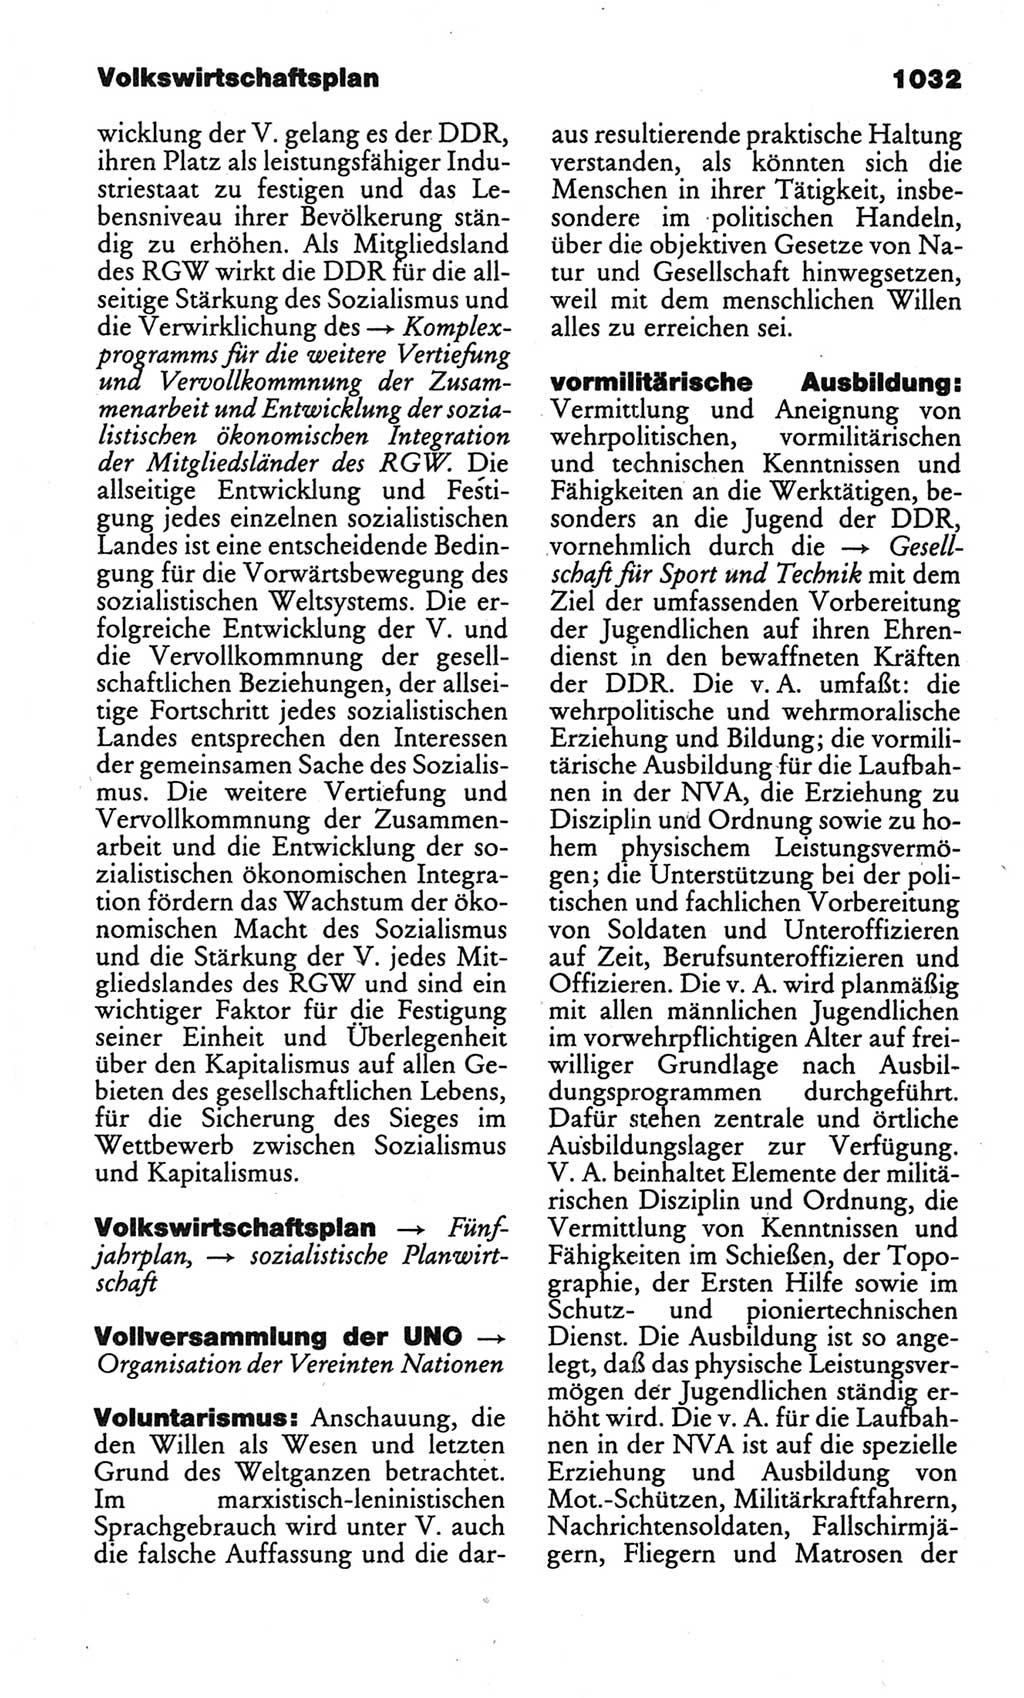 Kleines politisches Wörterbuch [Deutsche Demokratische Republik (DDR)] 1986, Seite 1032 (Kl. pol. Wb. DDR 1986, S. 1032)